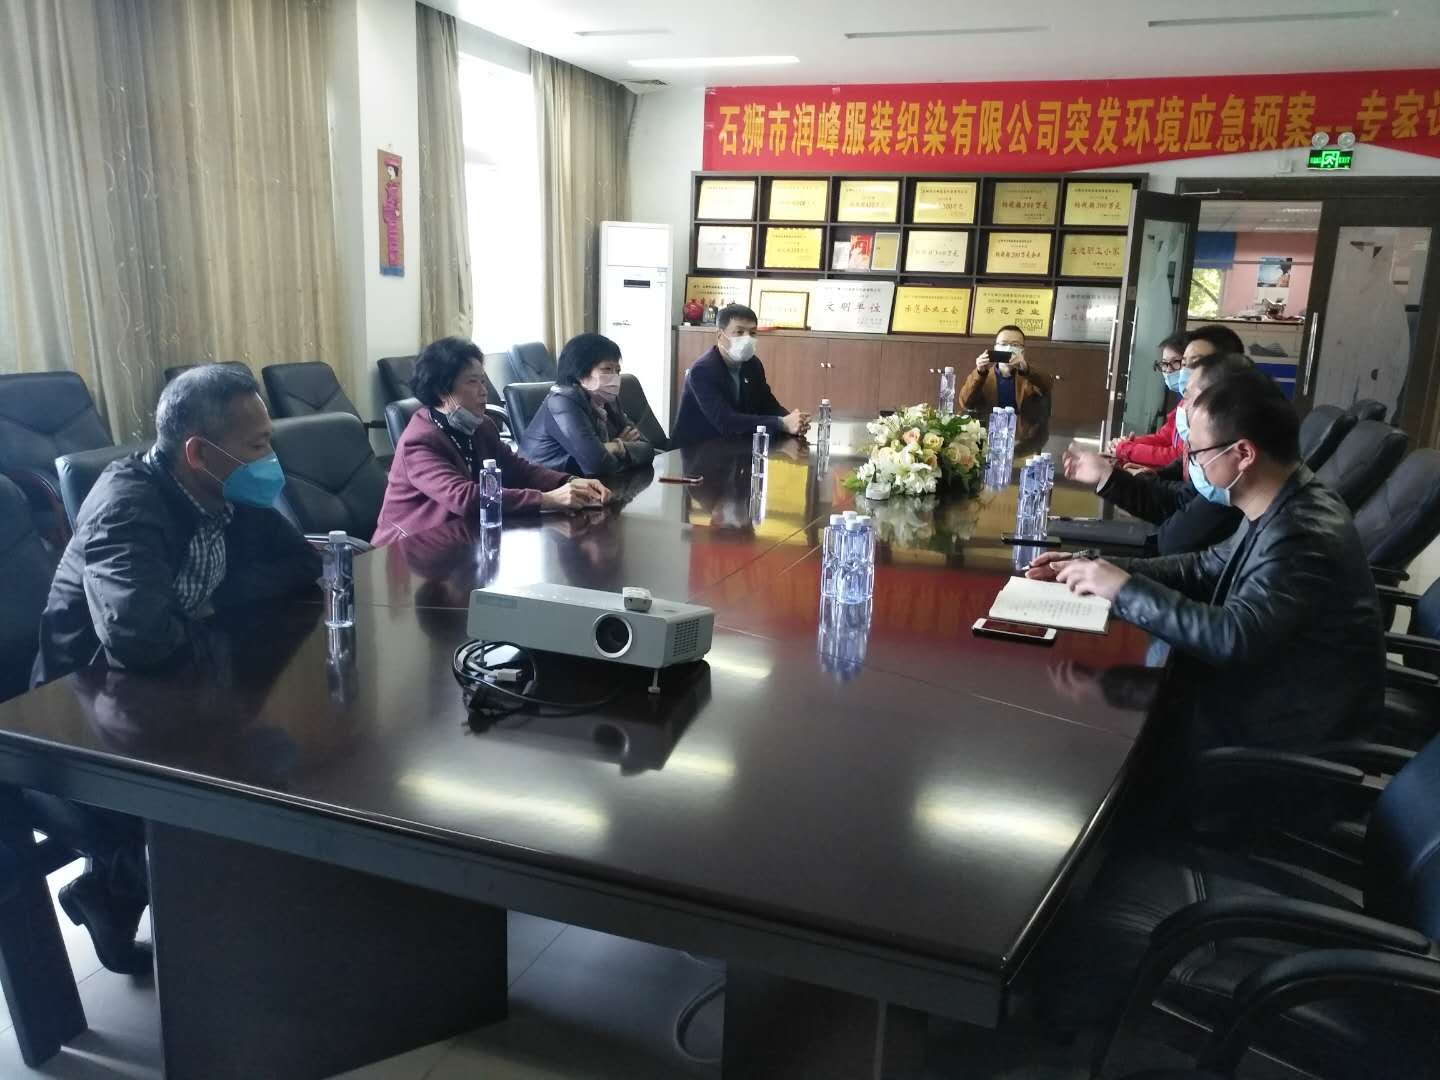 6陈晓玉主席、王巧丽副主席走访润峰织染公司.jpg